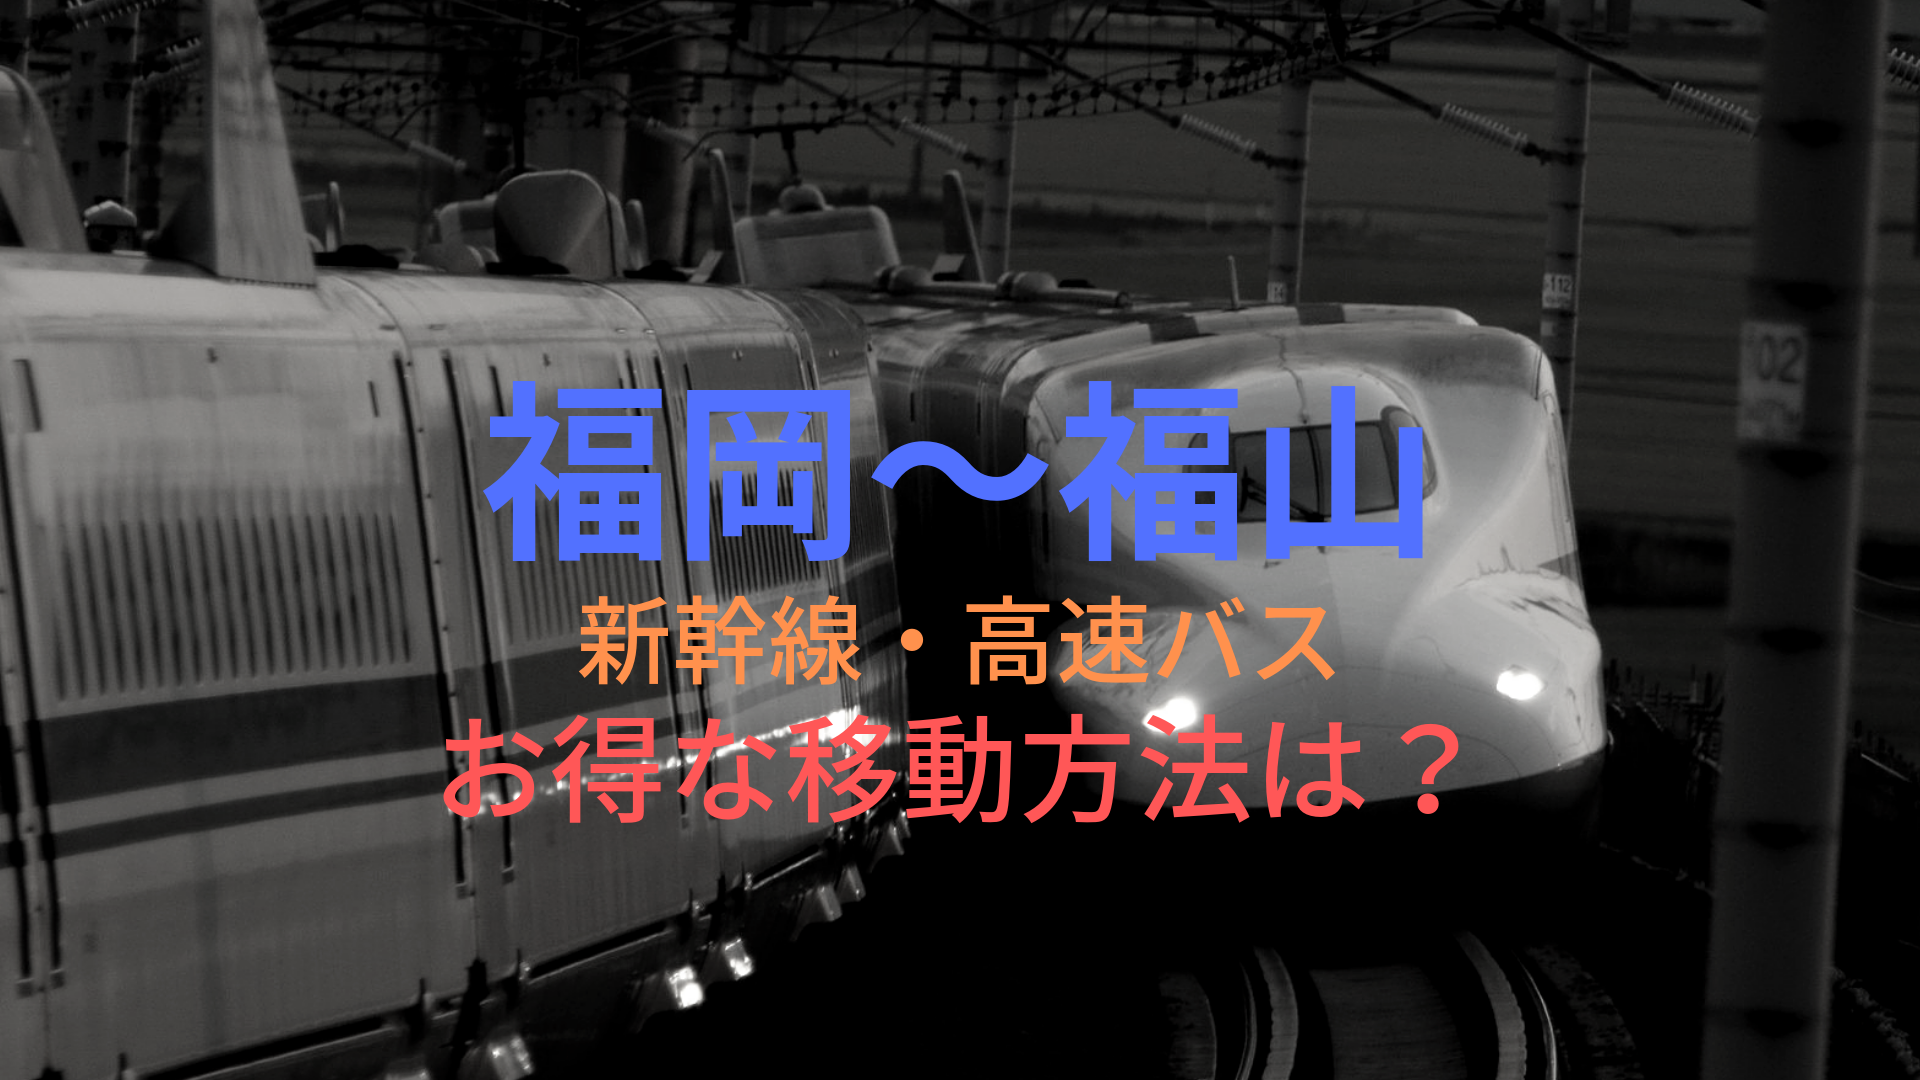 福岡 博多 福山 4500円 格安で移動する方法は 新幹線 高速バスをそれぞれ比較 ばしたく交通